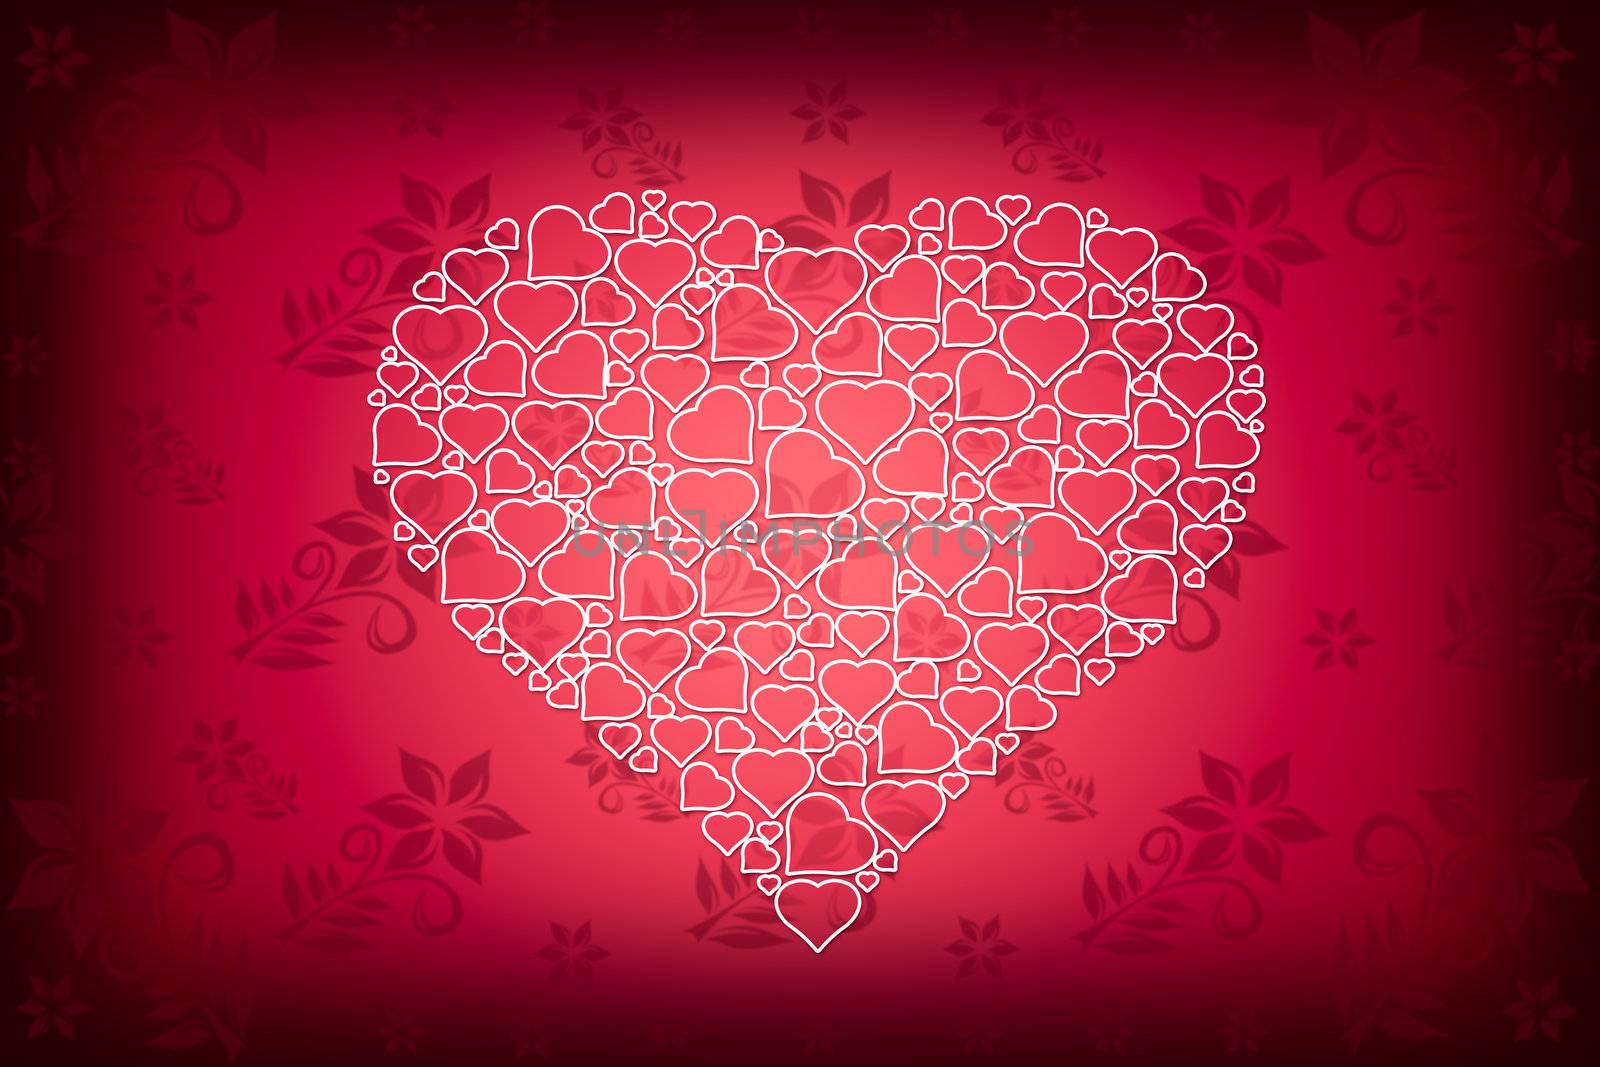 White Heart Design on Red Flower Wallpaper Background